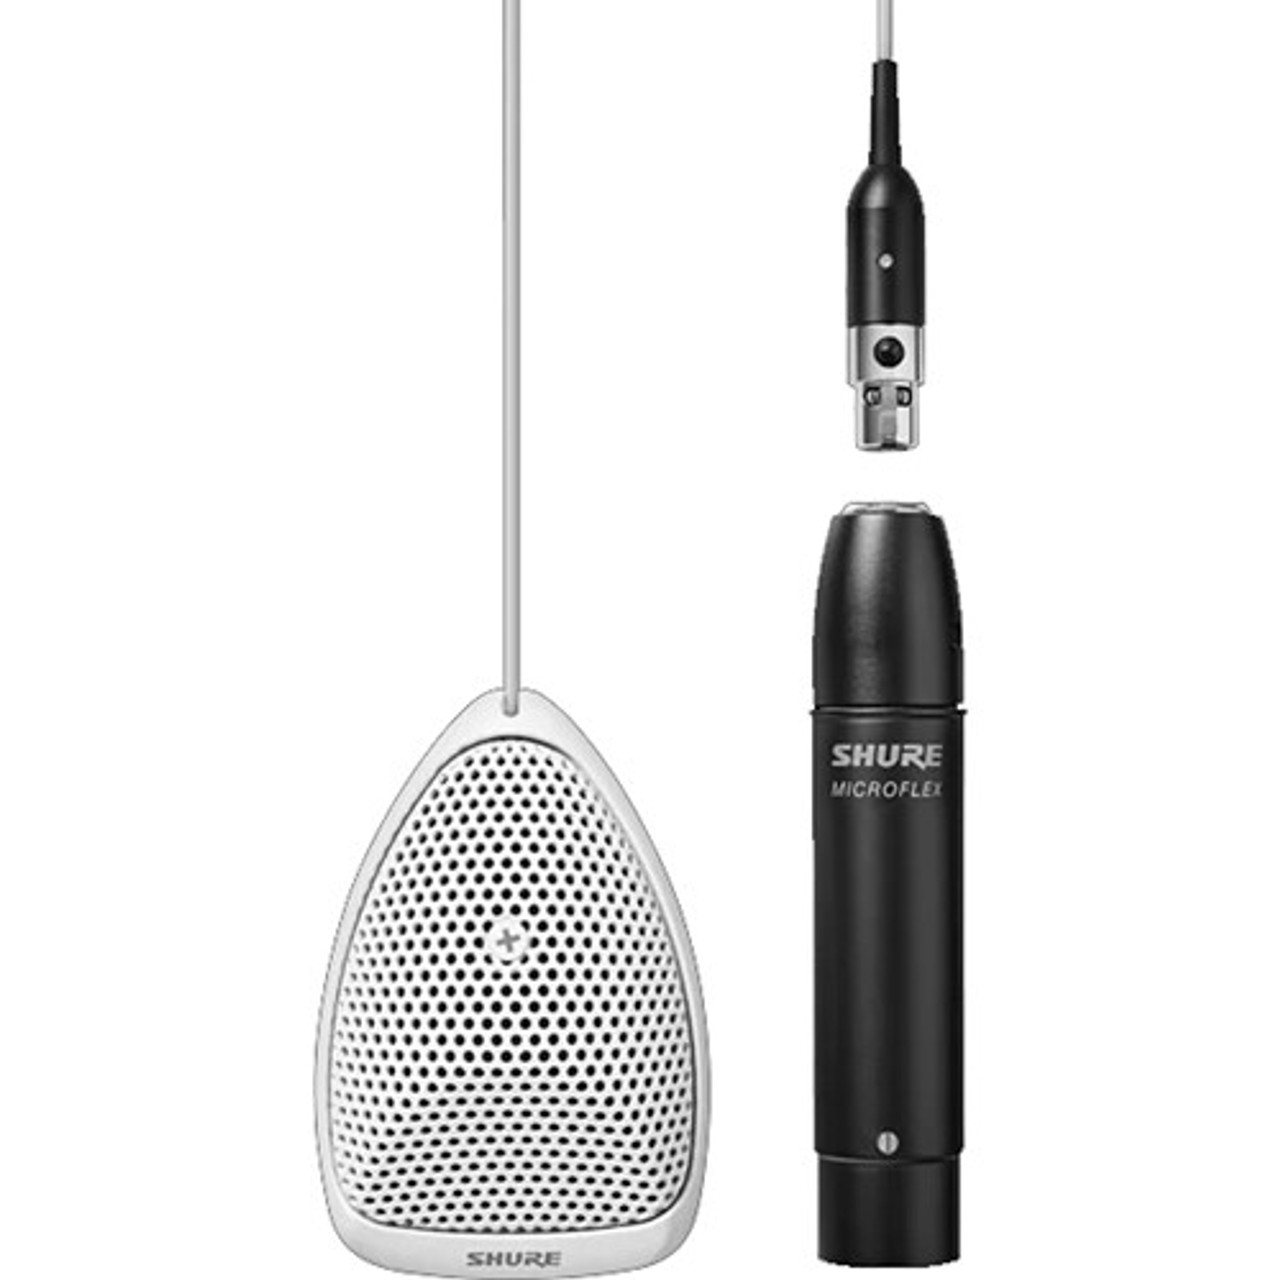 Shure MX391W-A/O Microflex Omnidirectional Boundary Microphone (White) (MX391W-A/O)